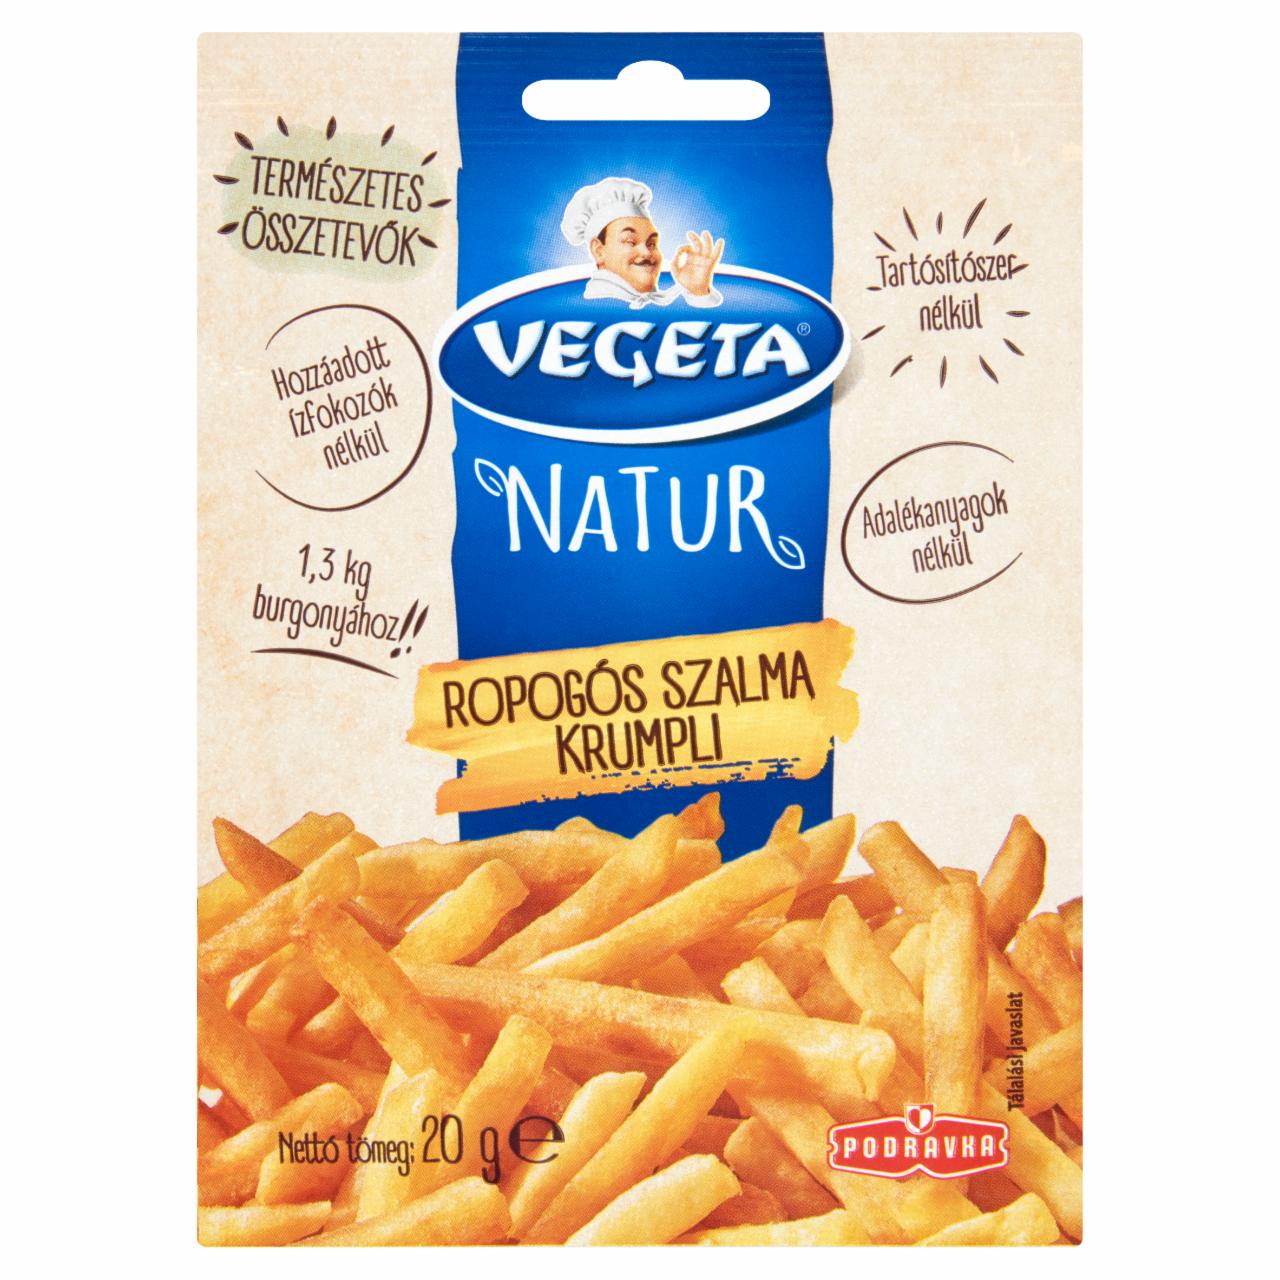 Képek - Vegeta Naturella ropogós szalma krumpli fűszerkeverék 20 g